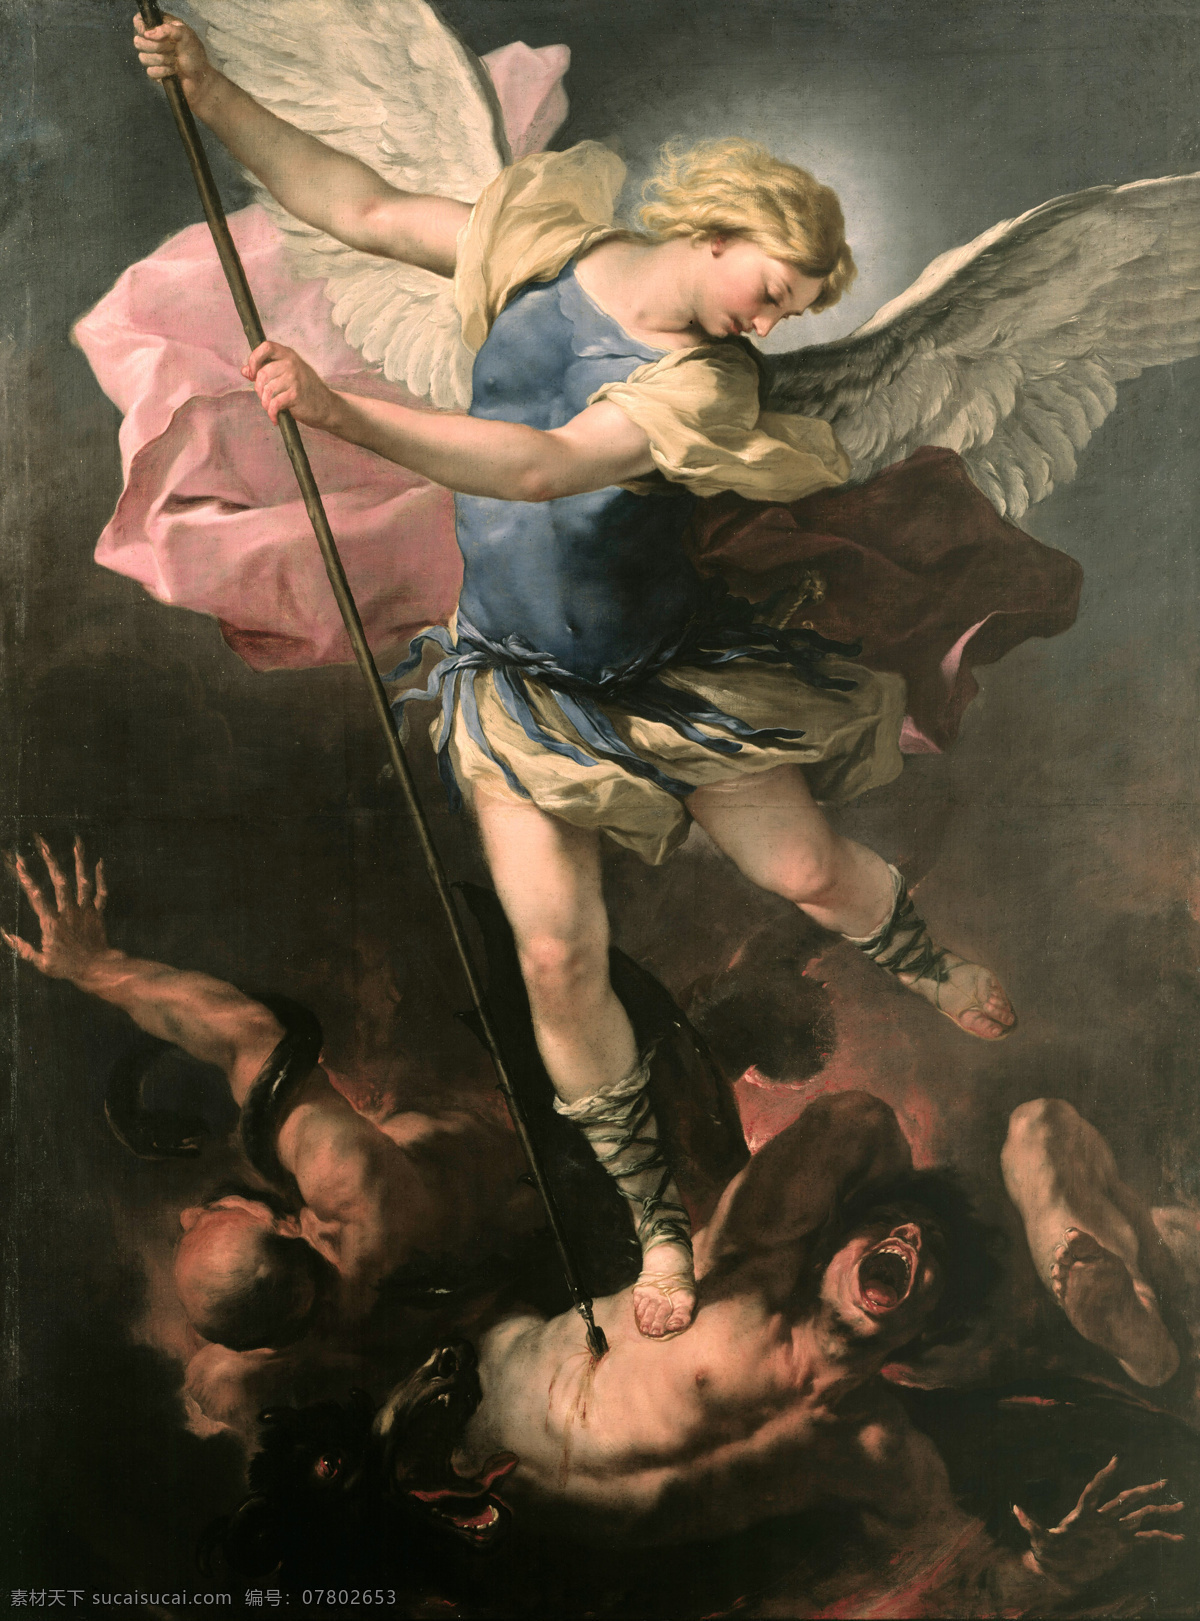 圣迈克尔 范 普雷 斯托 作品 宗教油画 神话故事 杀死魔鬼 天使长 长矛 19世纪油画 油画 绘画书法 文化艺术